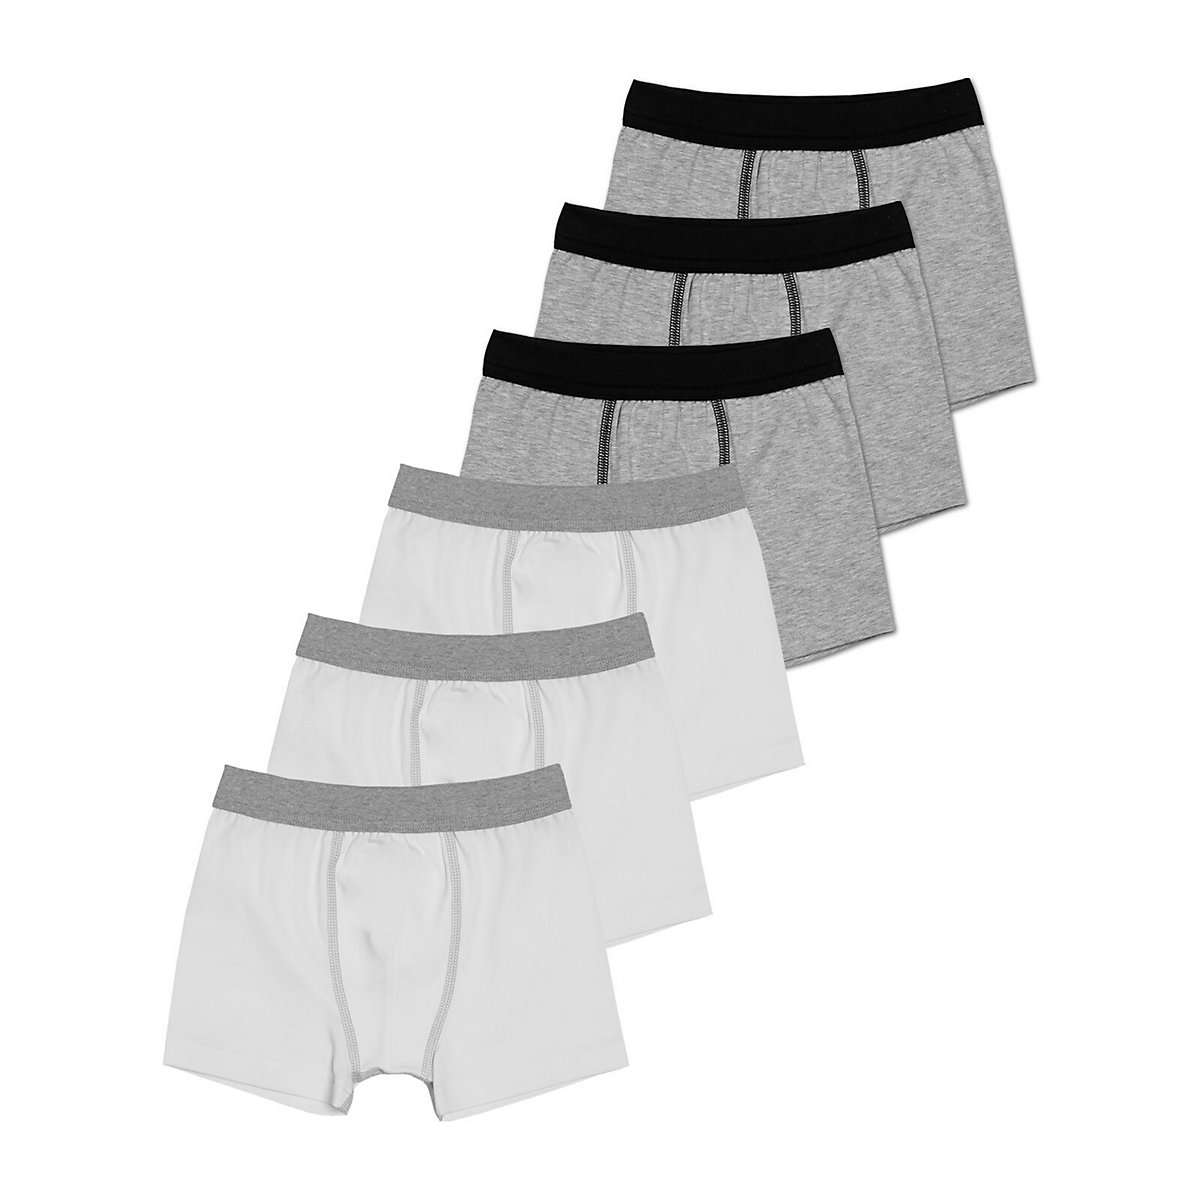 Sweety for Kids 6er Sparpack Knaben Shorts Single Jersey Retroshorts für Jungen grau/weiß